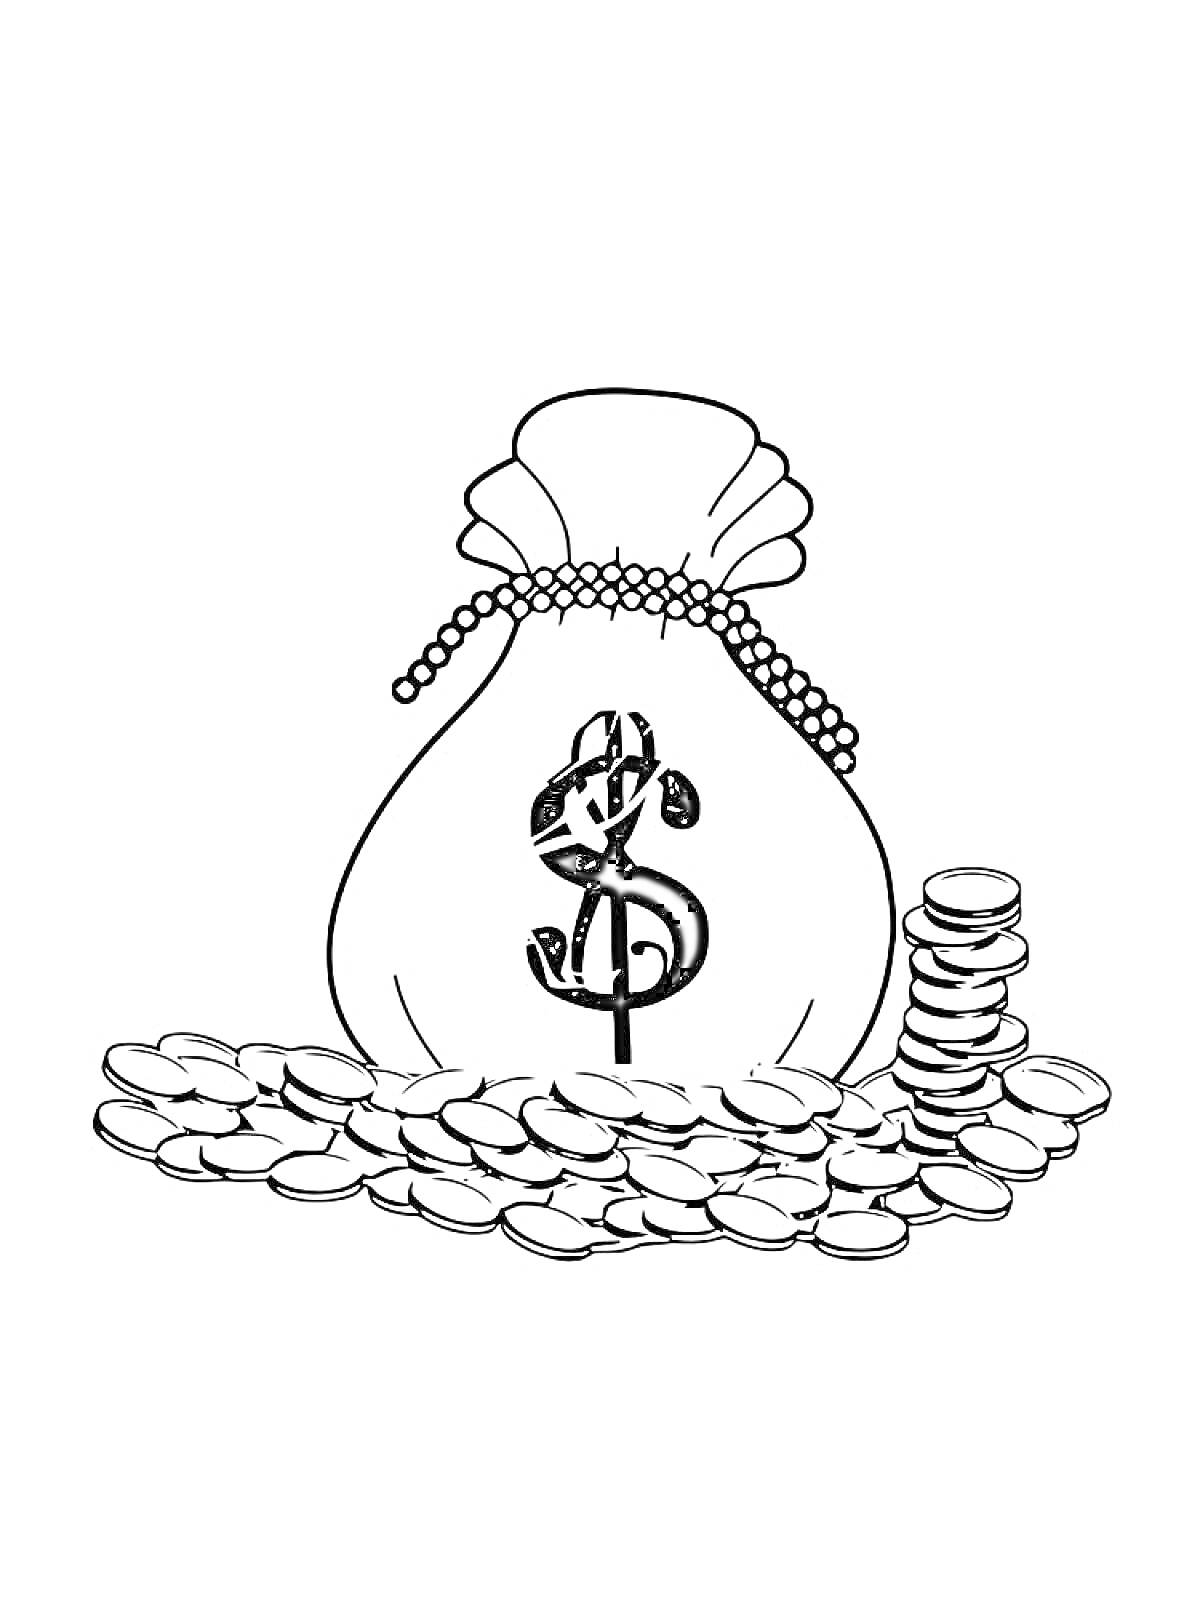 Раскраска Мешок с деньгами, монеты вокруг и стопка монет рядом